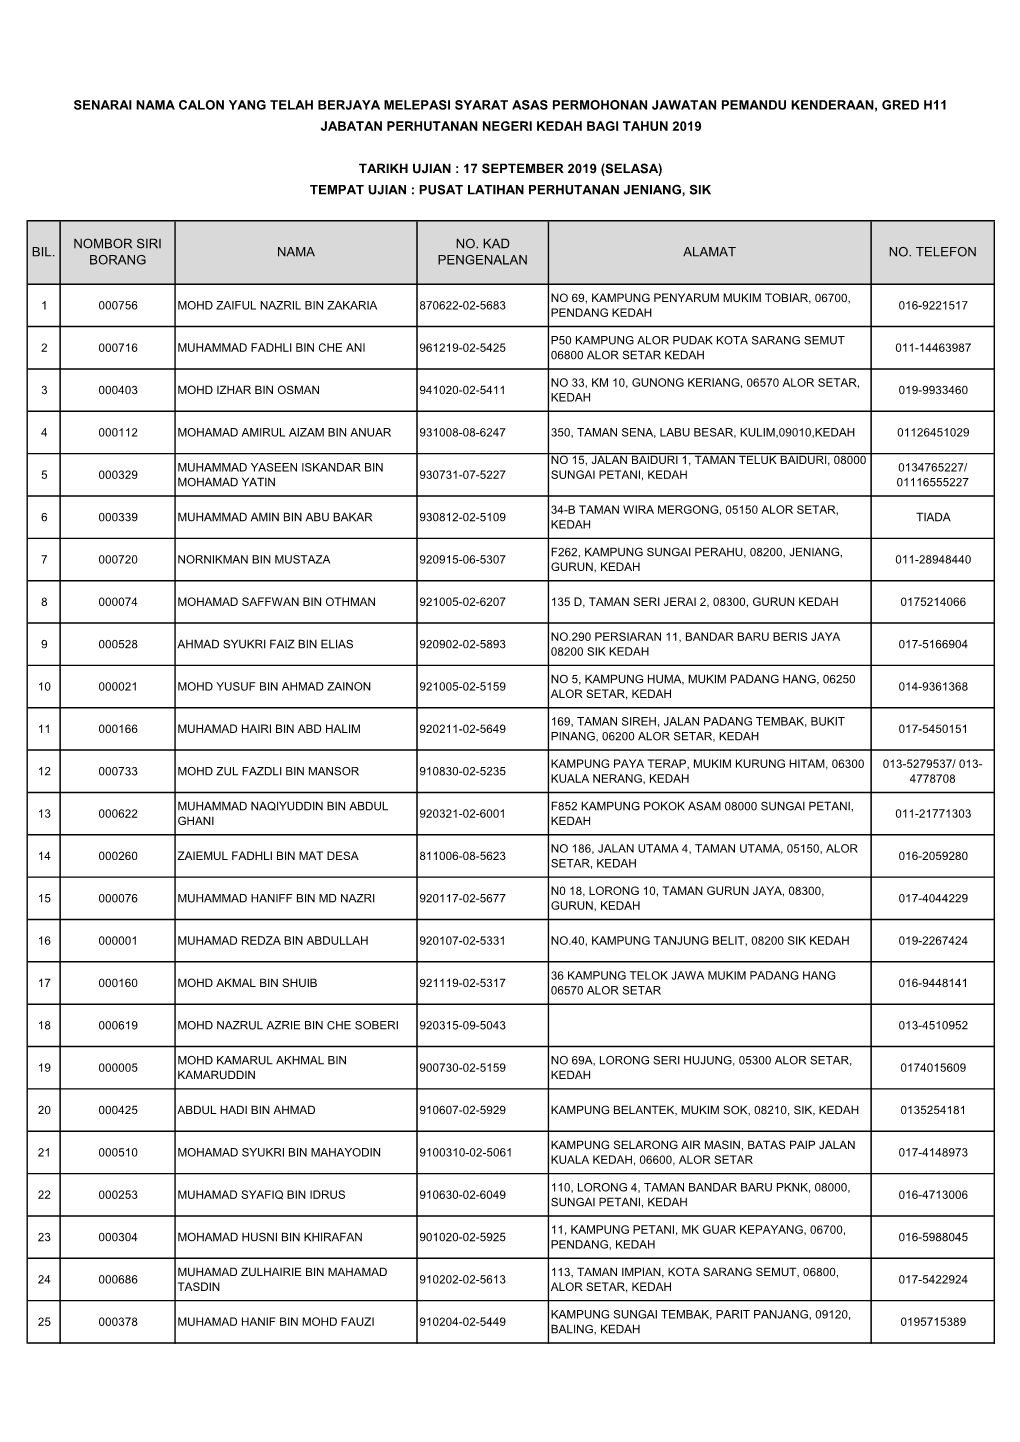 Senarai Nama Calon Yang Telah Berjaya Melepasi Syarat Asas Permohonan Jawatan Pemandu Kenderaan, Gred H11 Jabatan Perhutanan Negeri Kedah Bagi Tahun 2019